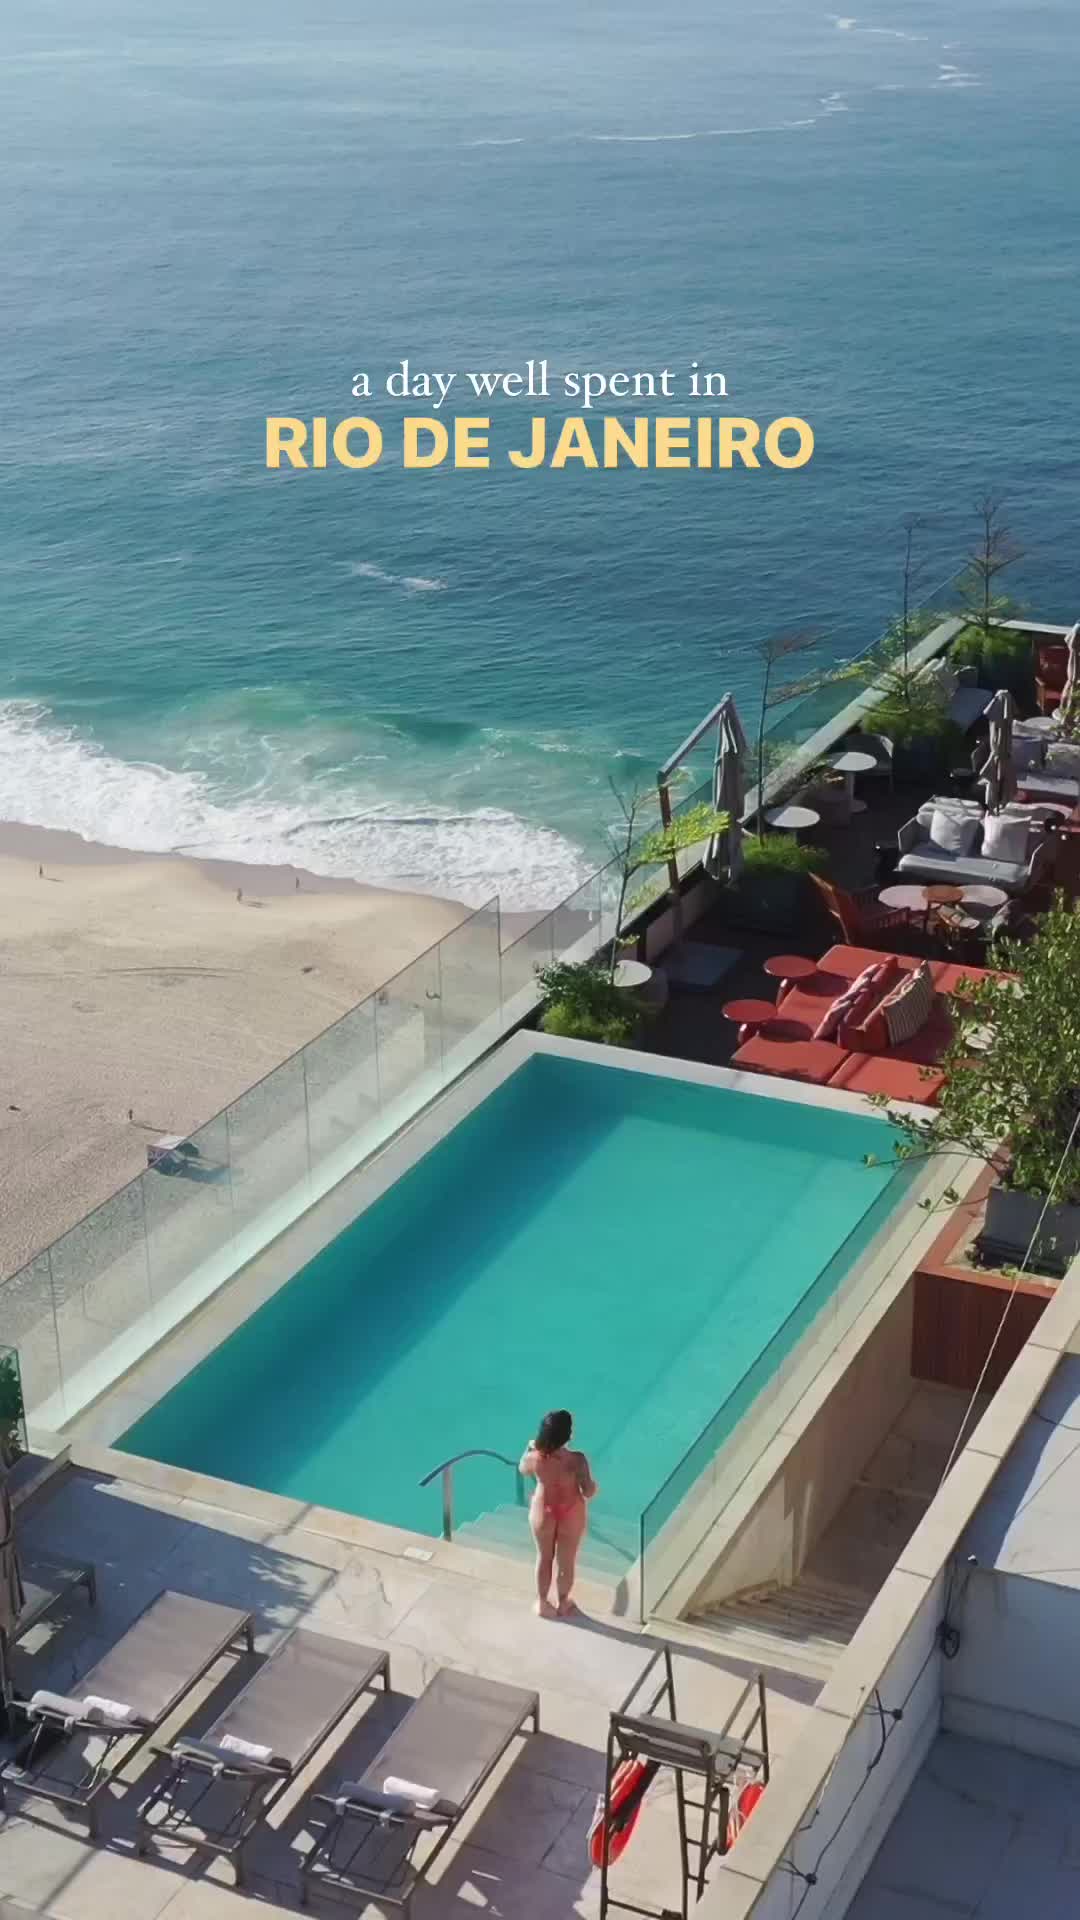 Sunny Rio Day at Hilton Copacabana Hotel